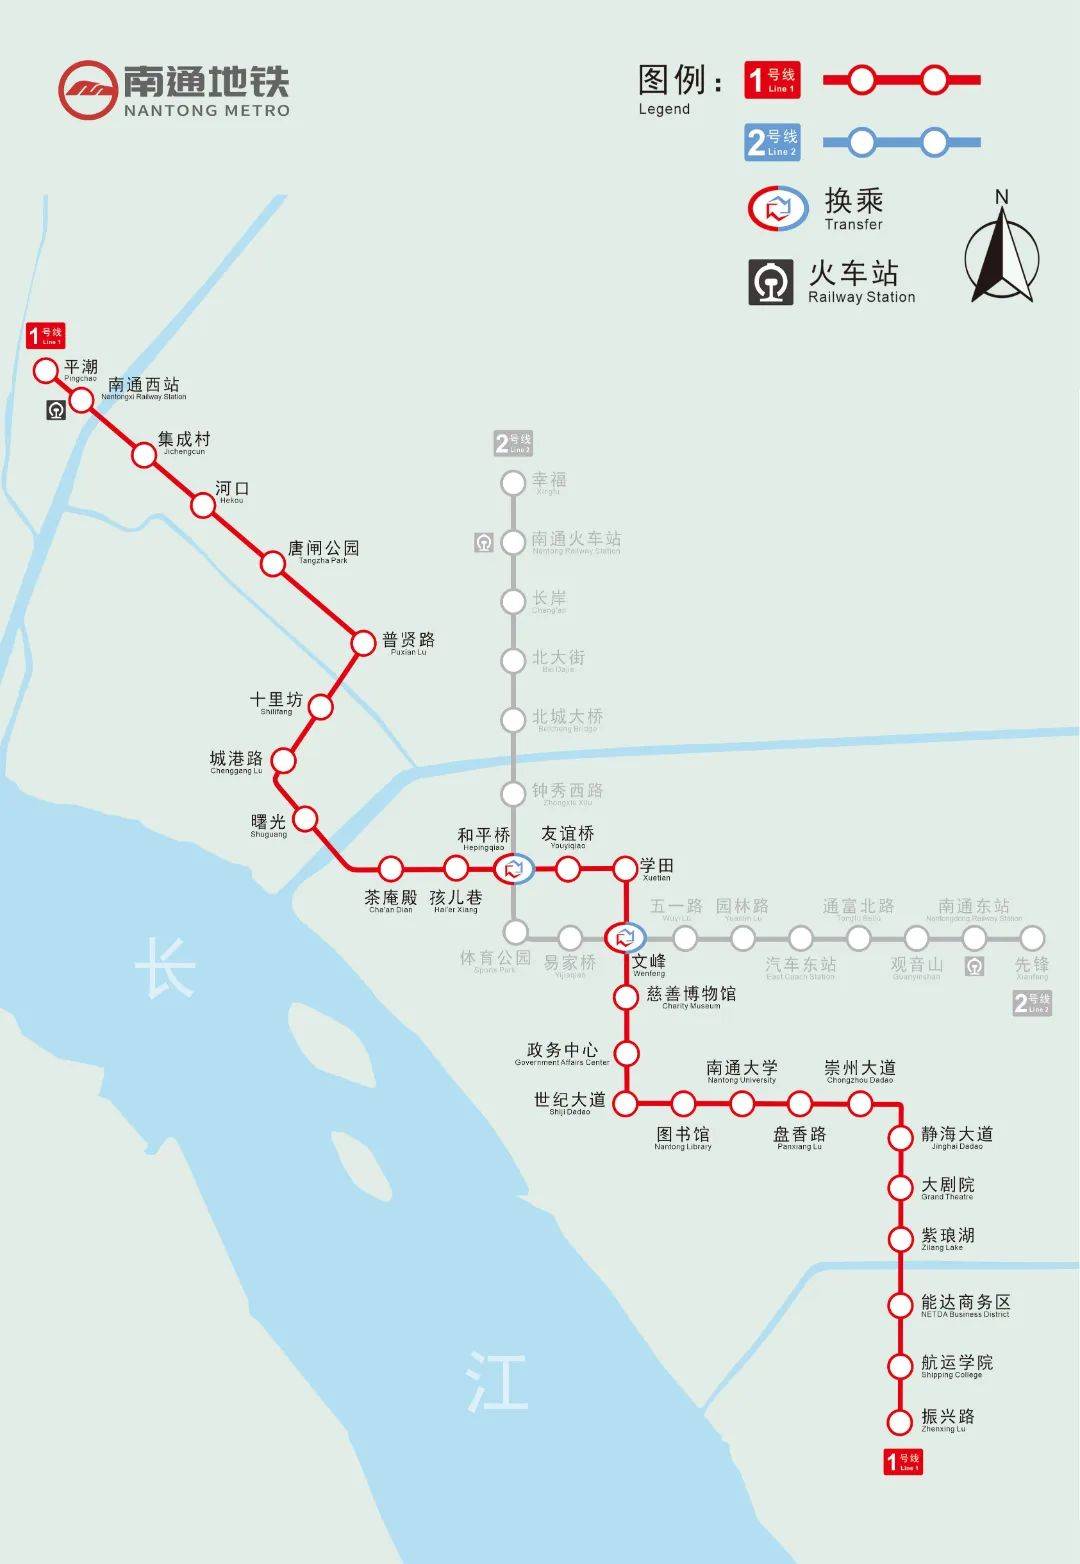 南通城建史上最大工程——南通地铁1号线11月10日正式运营